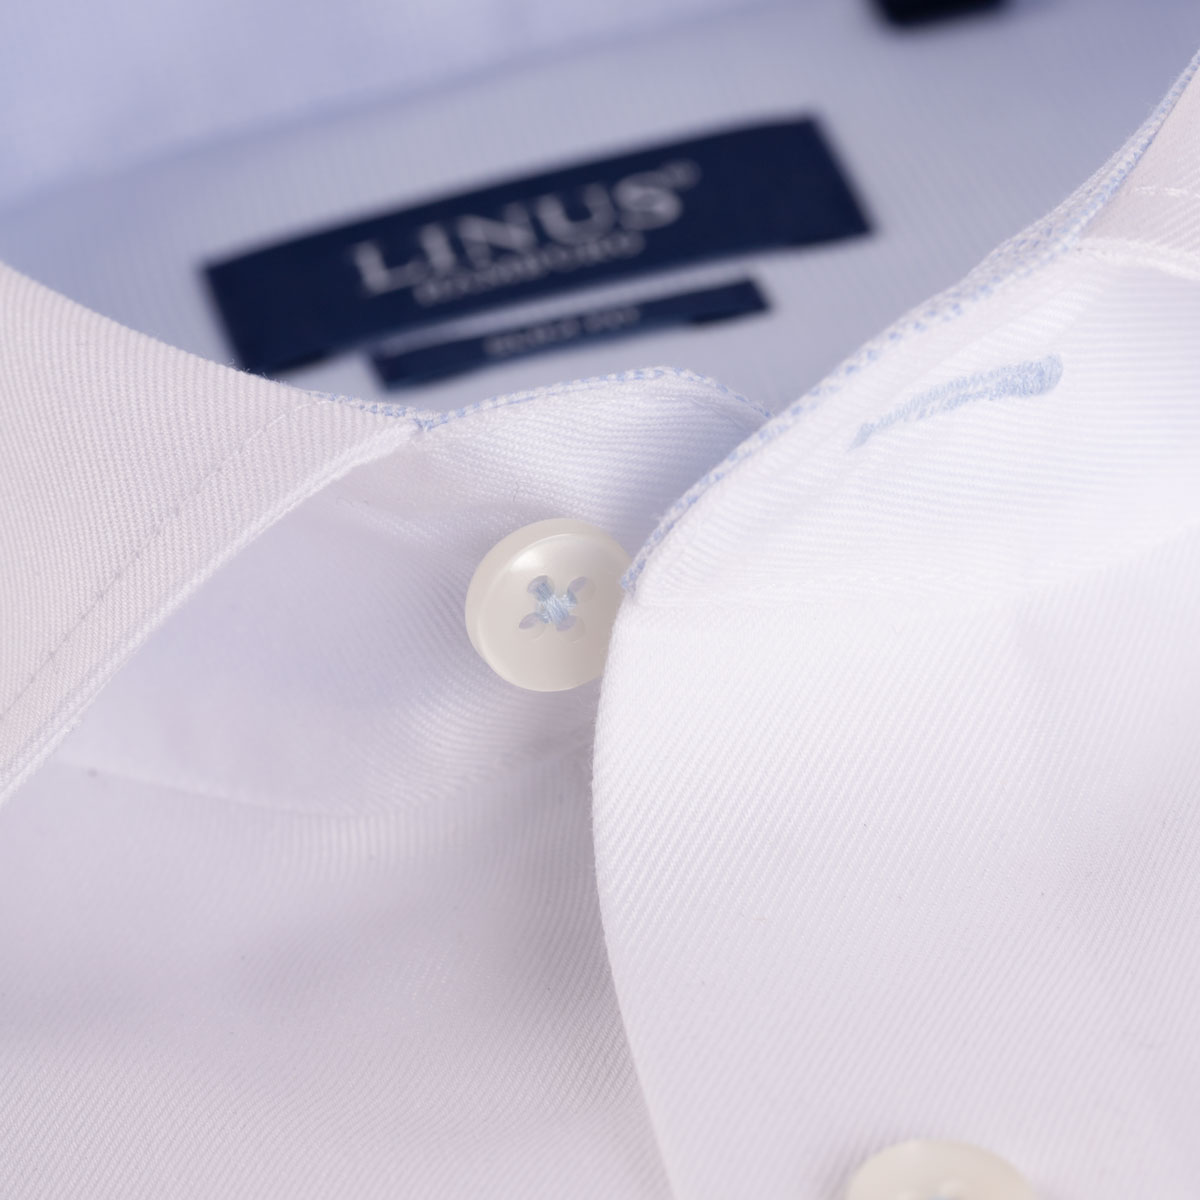 Slim Fit Hemd aus Baumwolle in weiß mit hellblauen Details